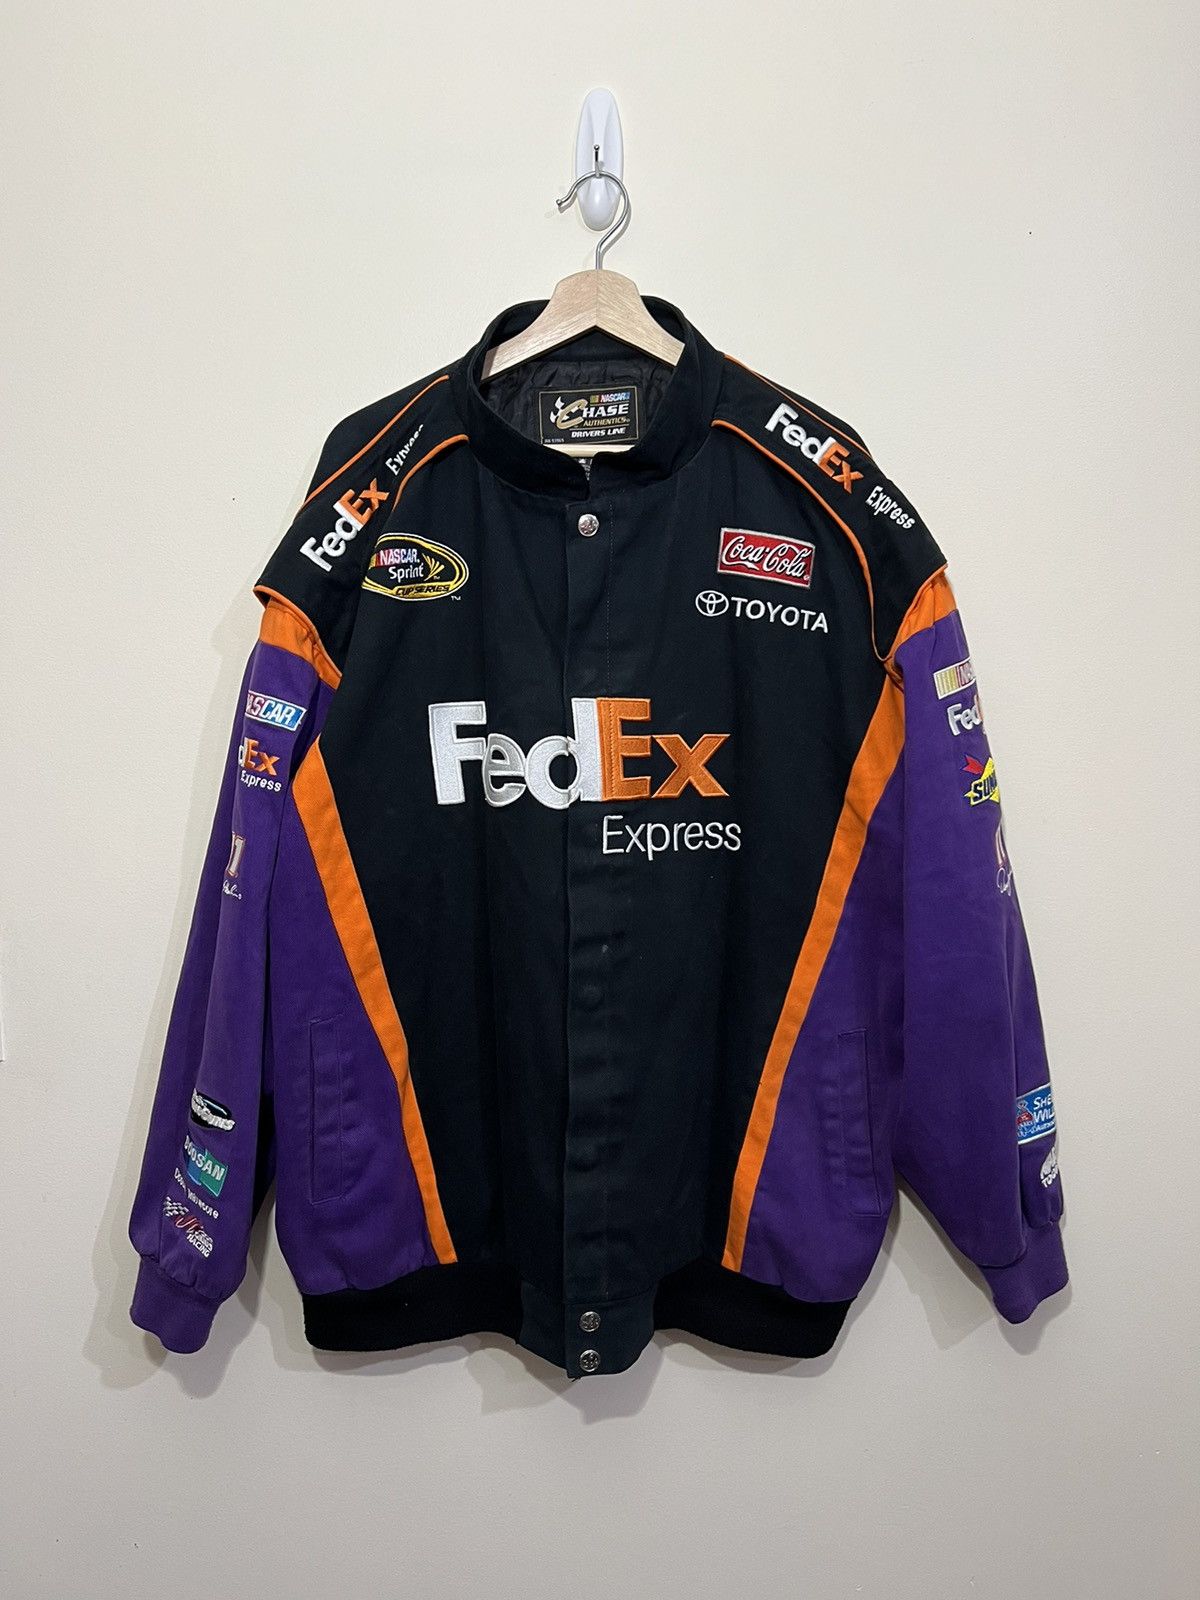 Fedex Racing Jacket | Grailed